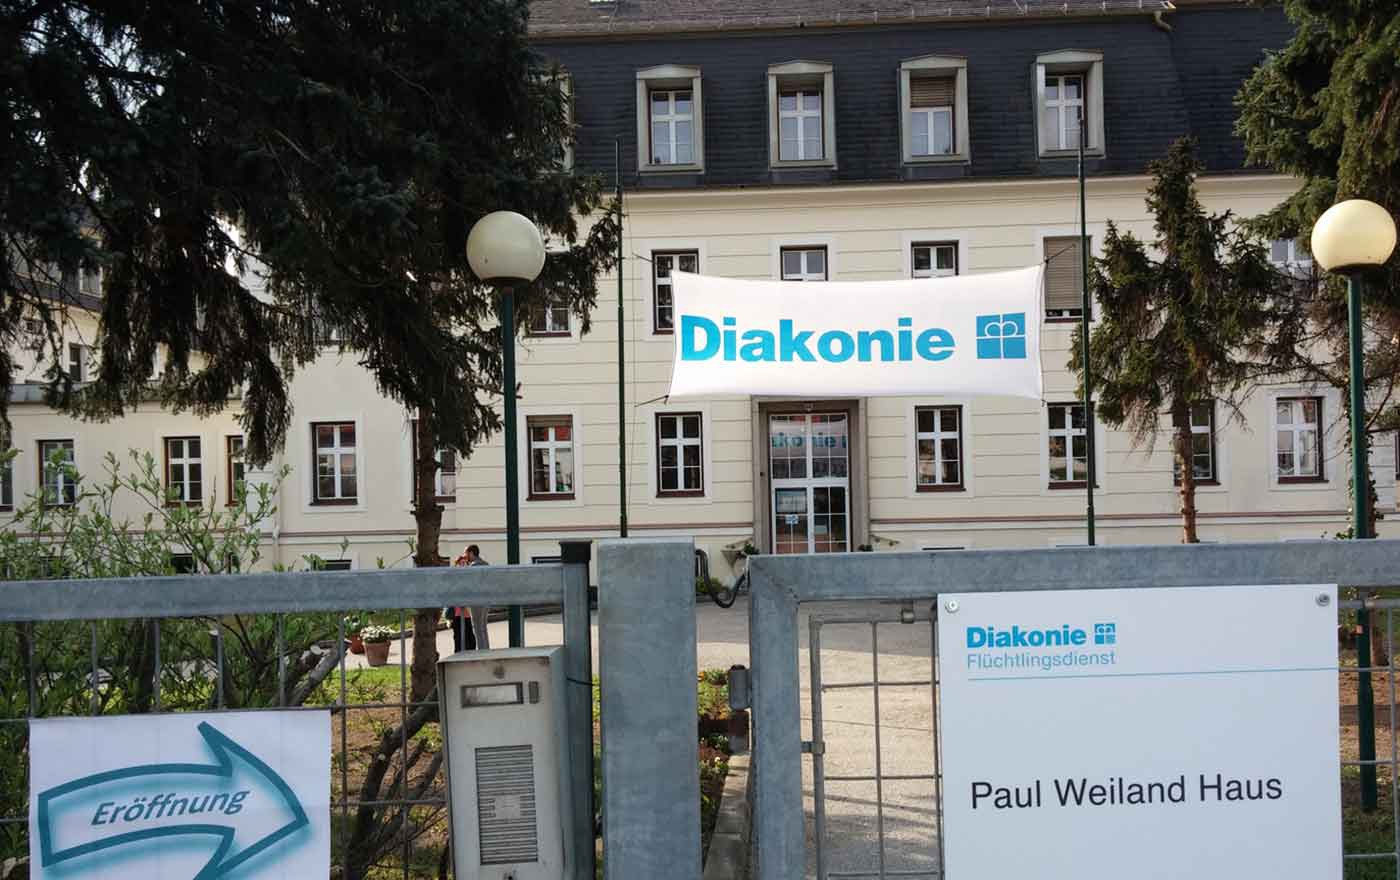 200 Menschen auf der Flucht, darunter viele unbegleitete minderjährige Flüchtlinge, haben im neuen Paul-Weiland-Haus des Diakonie-Flüchtlingsdienstes in Baden ein sicheres Zuhause gefunden. Foto: epd/Dasek